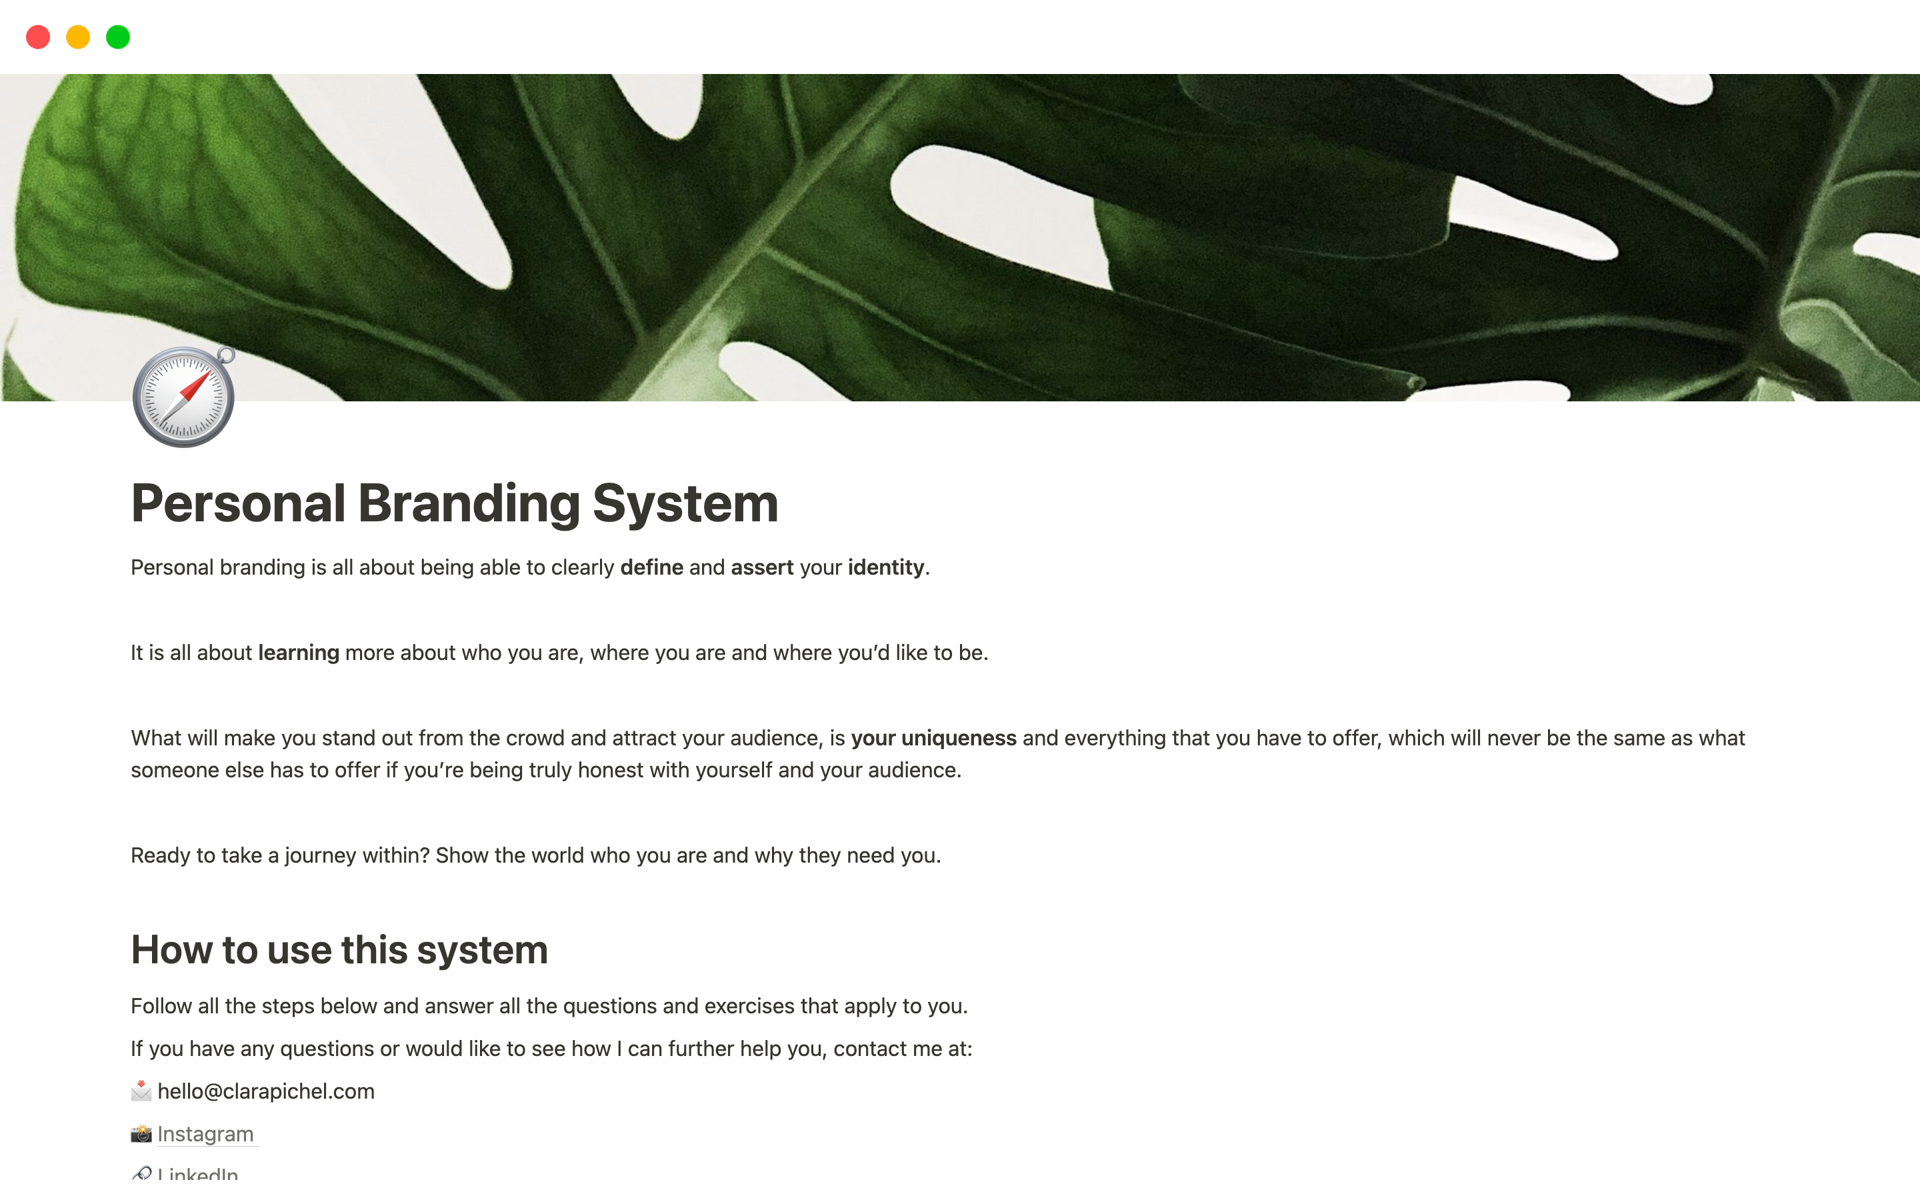 Aperçu du modèle de Personal Branding System 